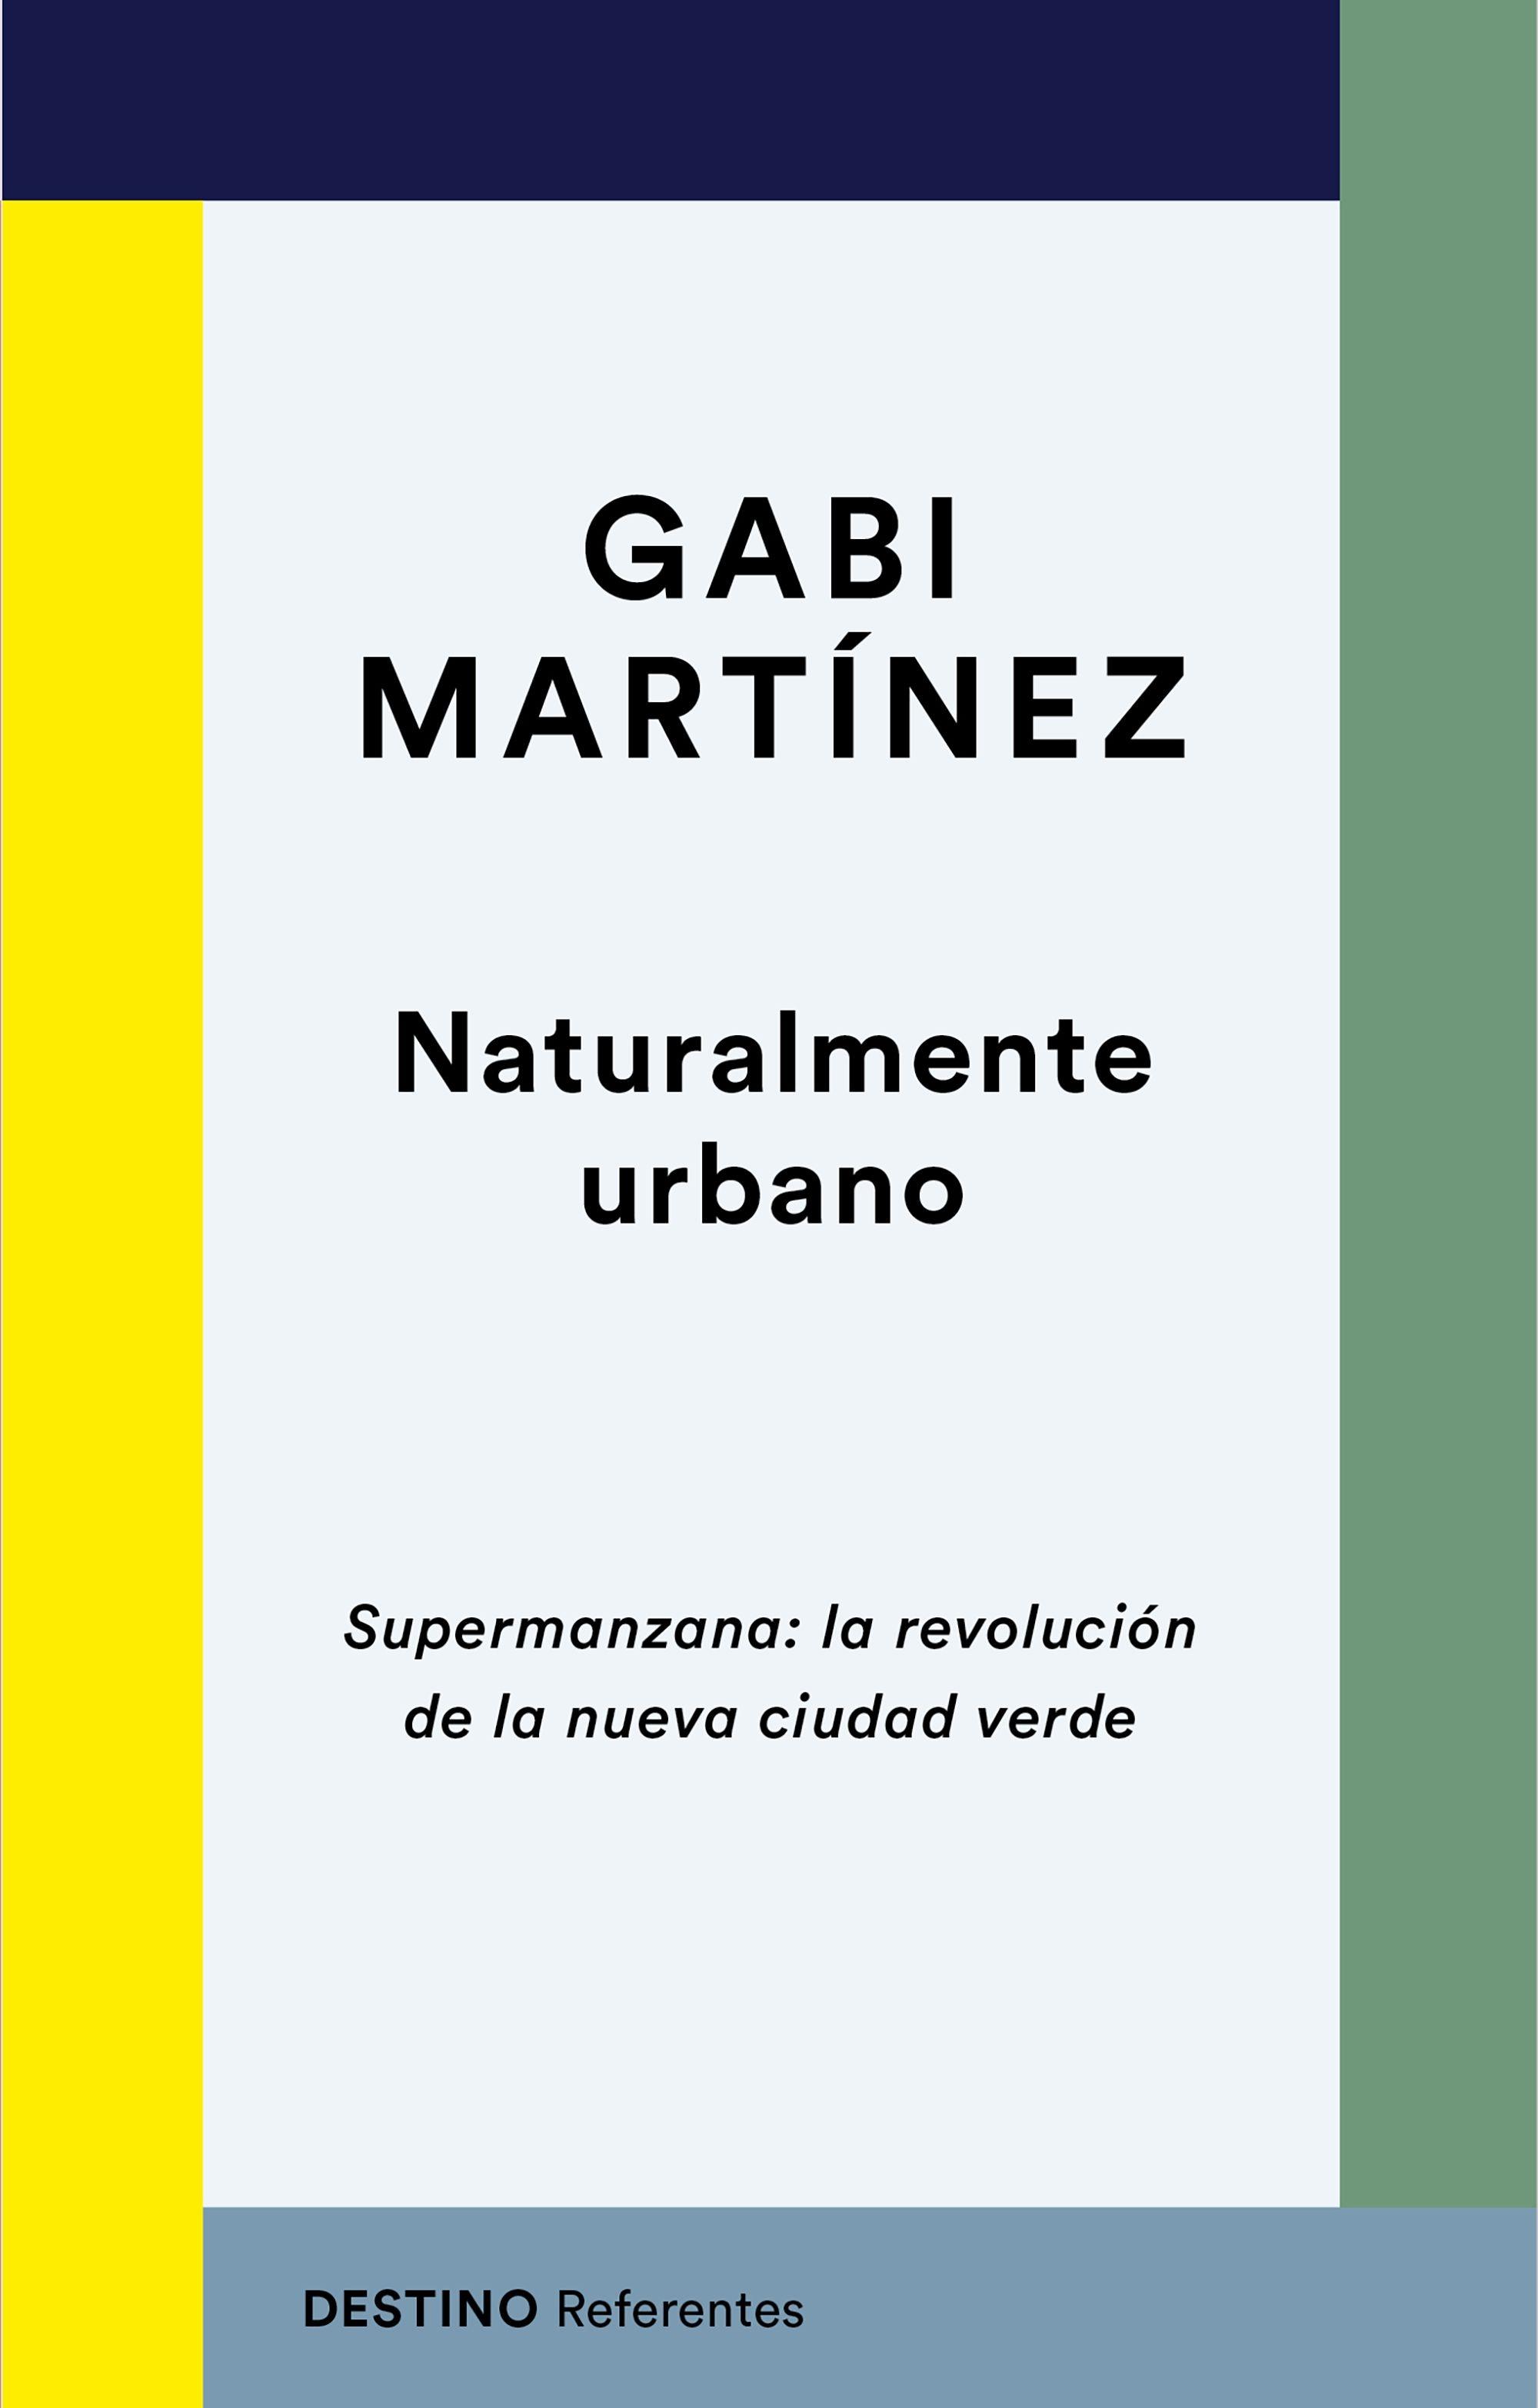 Naturalmente urbano "Supermanzana: la revolución de la nueva ciudad verde". 